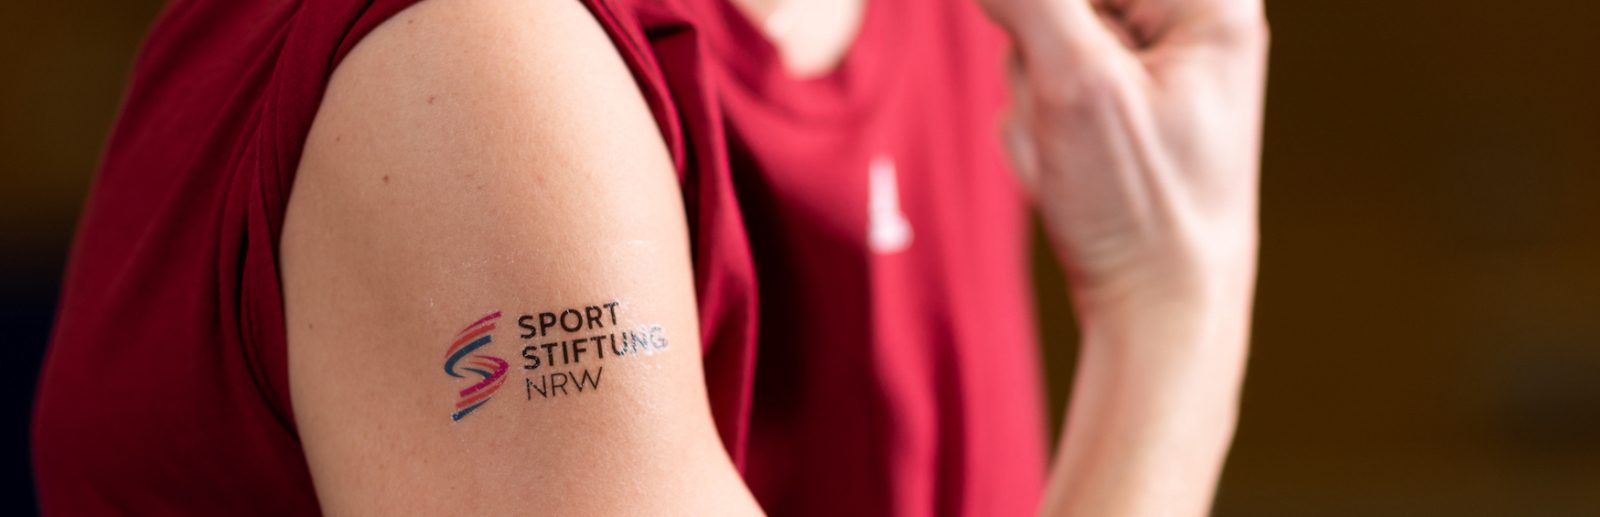 Das Logo der Sportstiftung NRW abgebildet auf dem Arm eines Athletens